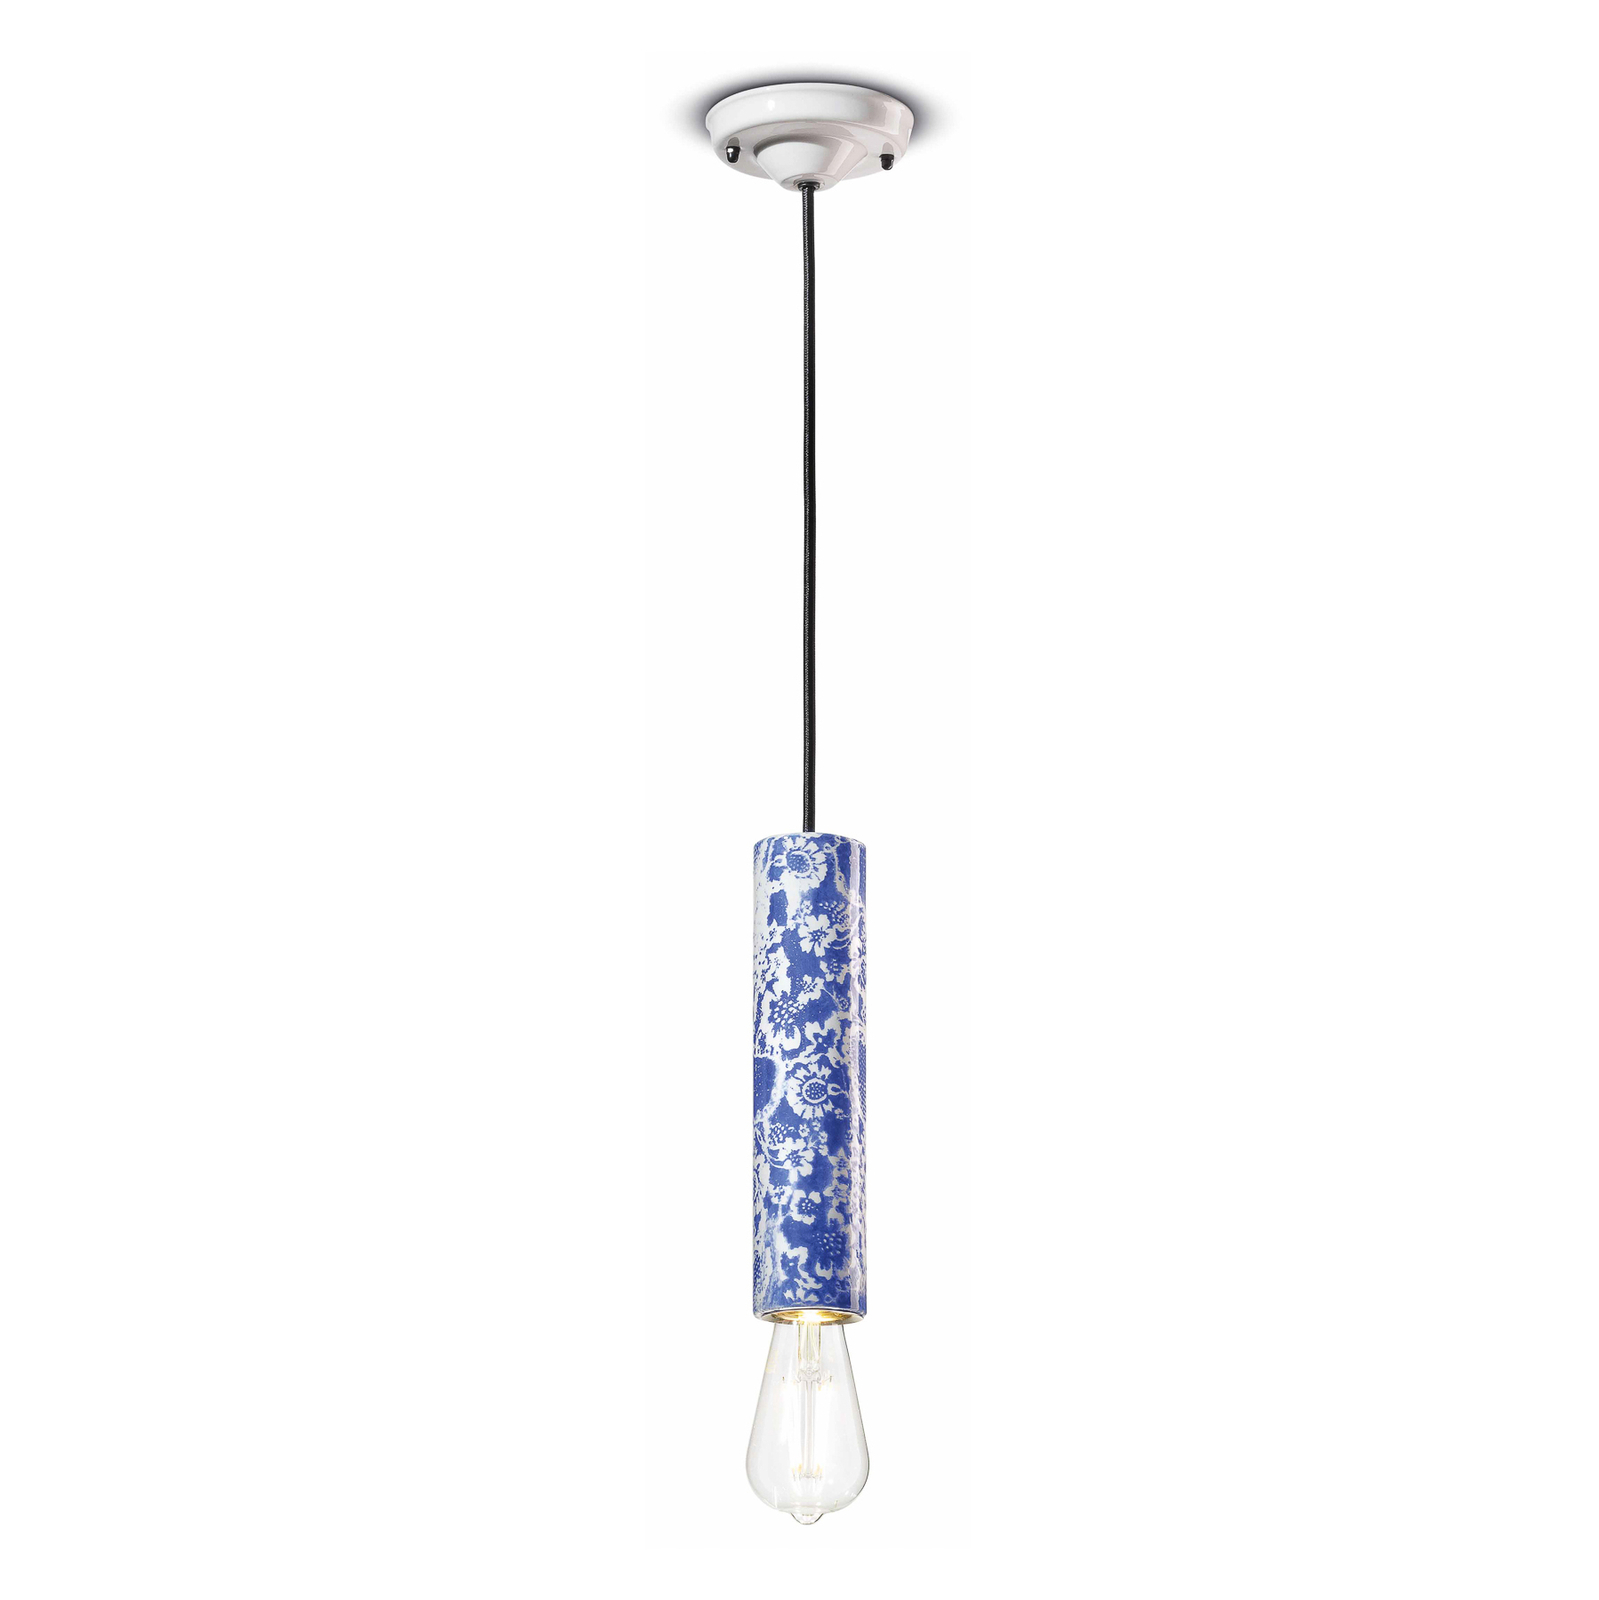 Függő lámpa PI virágmintás, Ø 5,5 cm kék/fehér